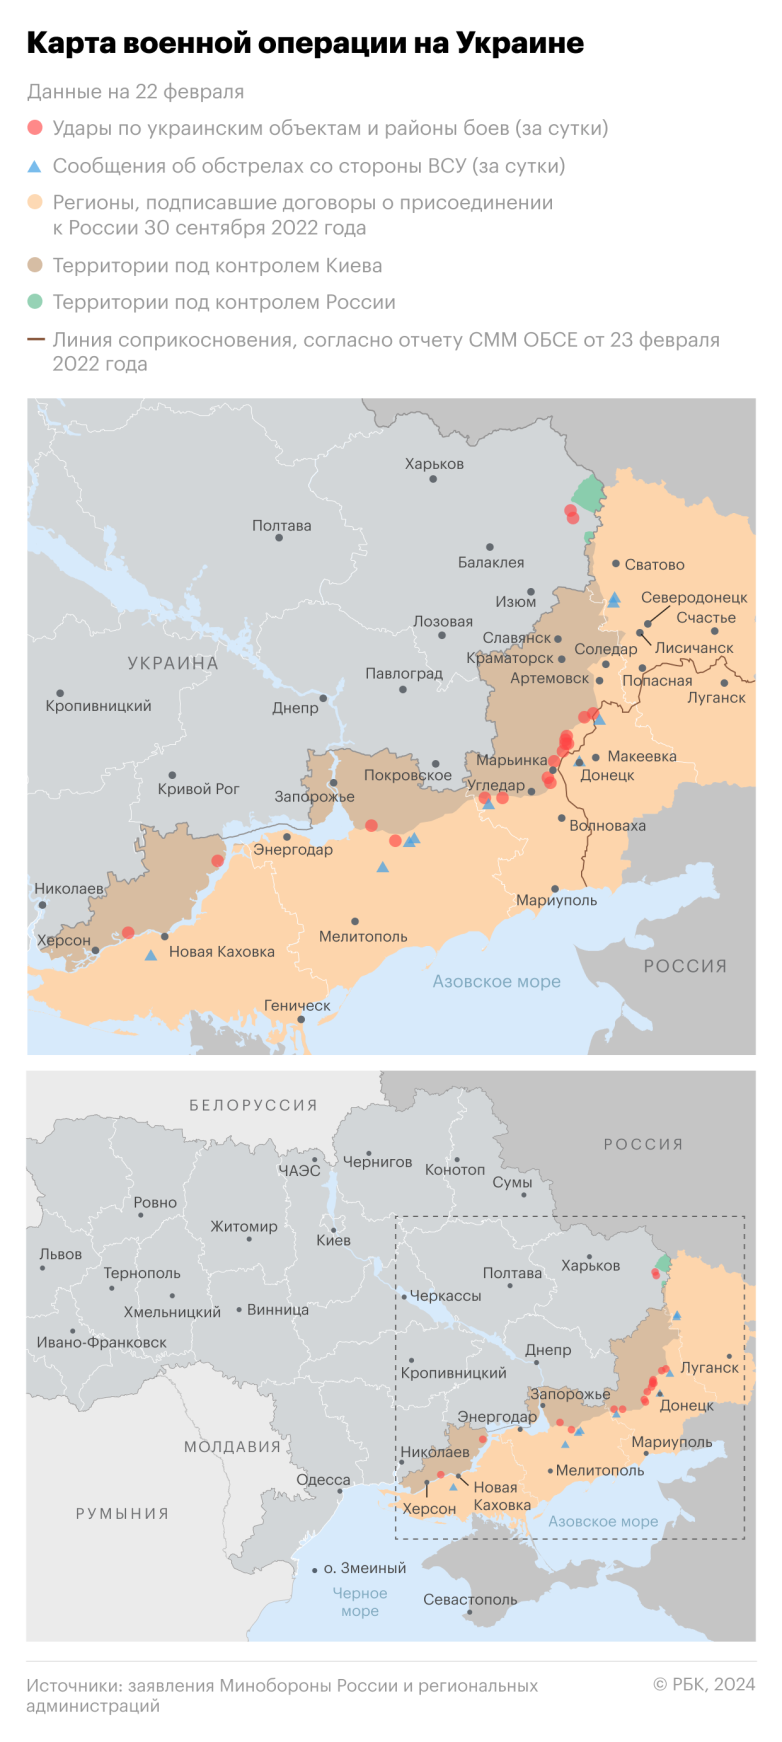 Причиной раскола между Западной и Восточной Европой стала помощь Украине